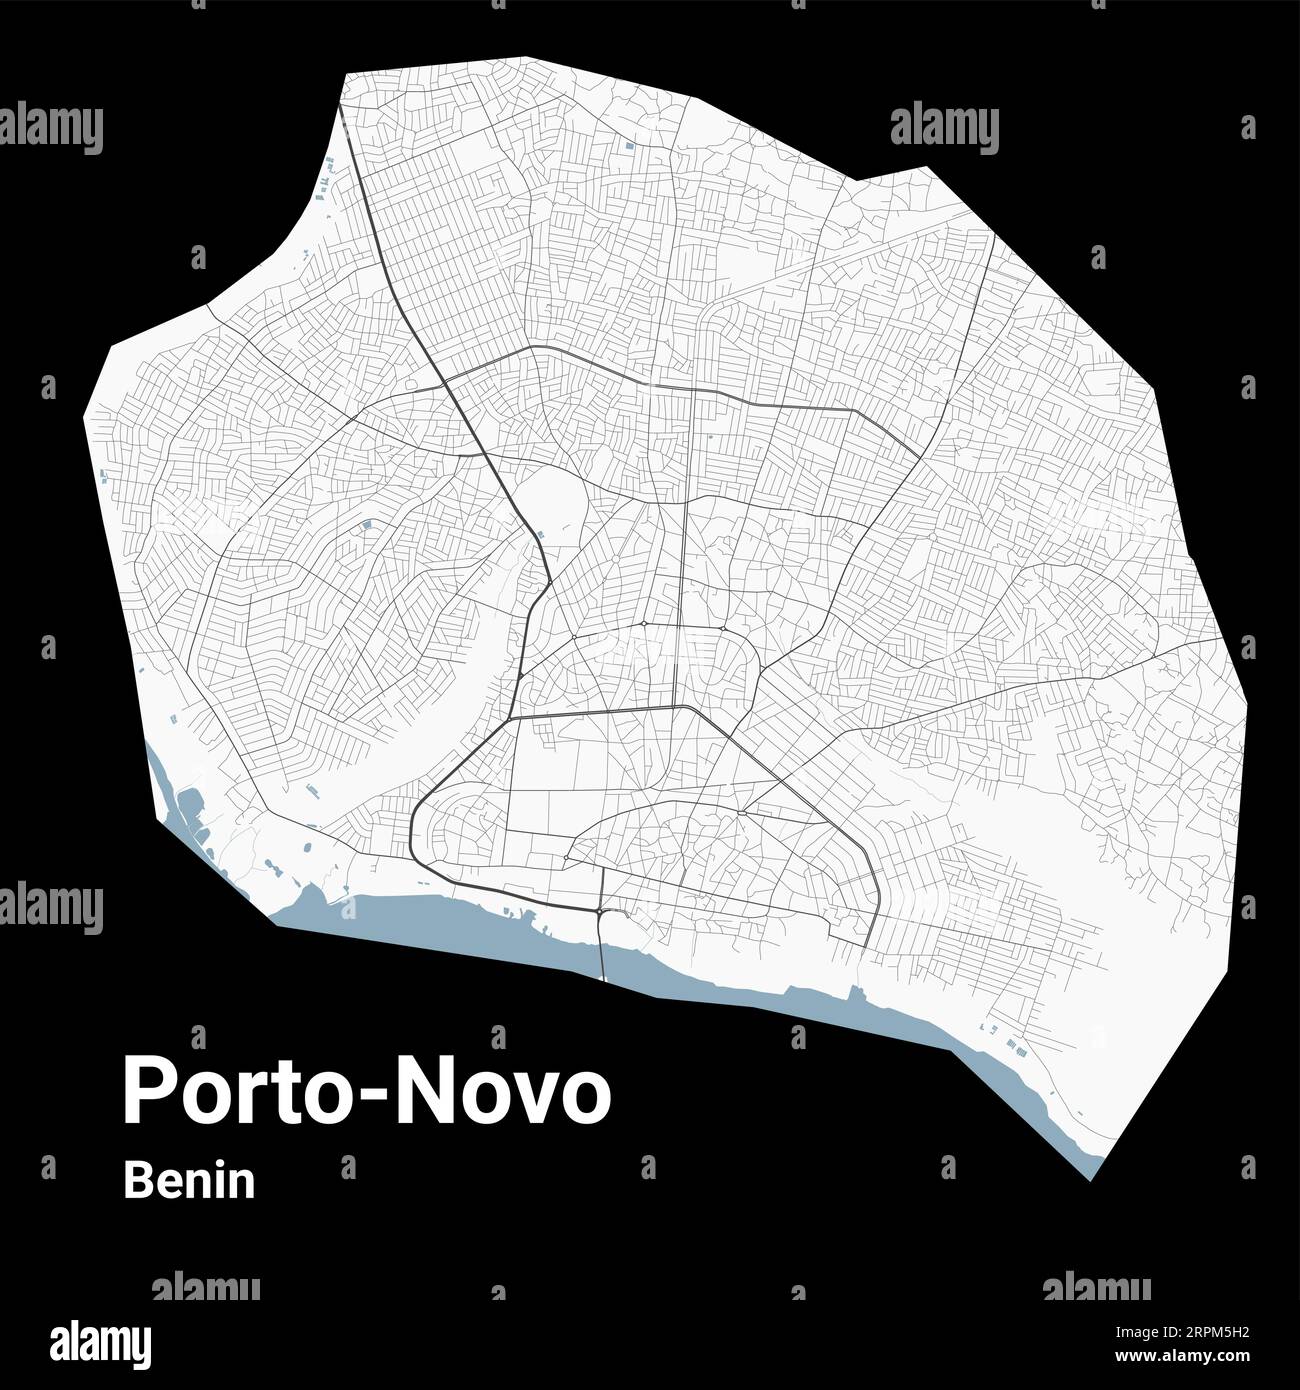 Mappa di Porto-Novo, capitale del Benin. Mappa dell'area amministrativa comunale con fiumi e strade, parchi e ferrovie. Illustrazione vettoriale. Illustrazione Vettoriale